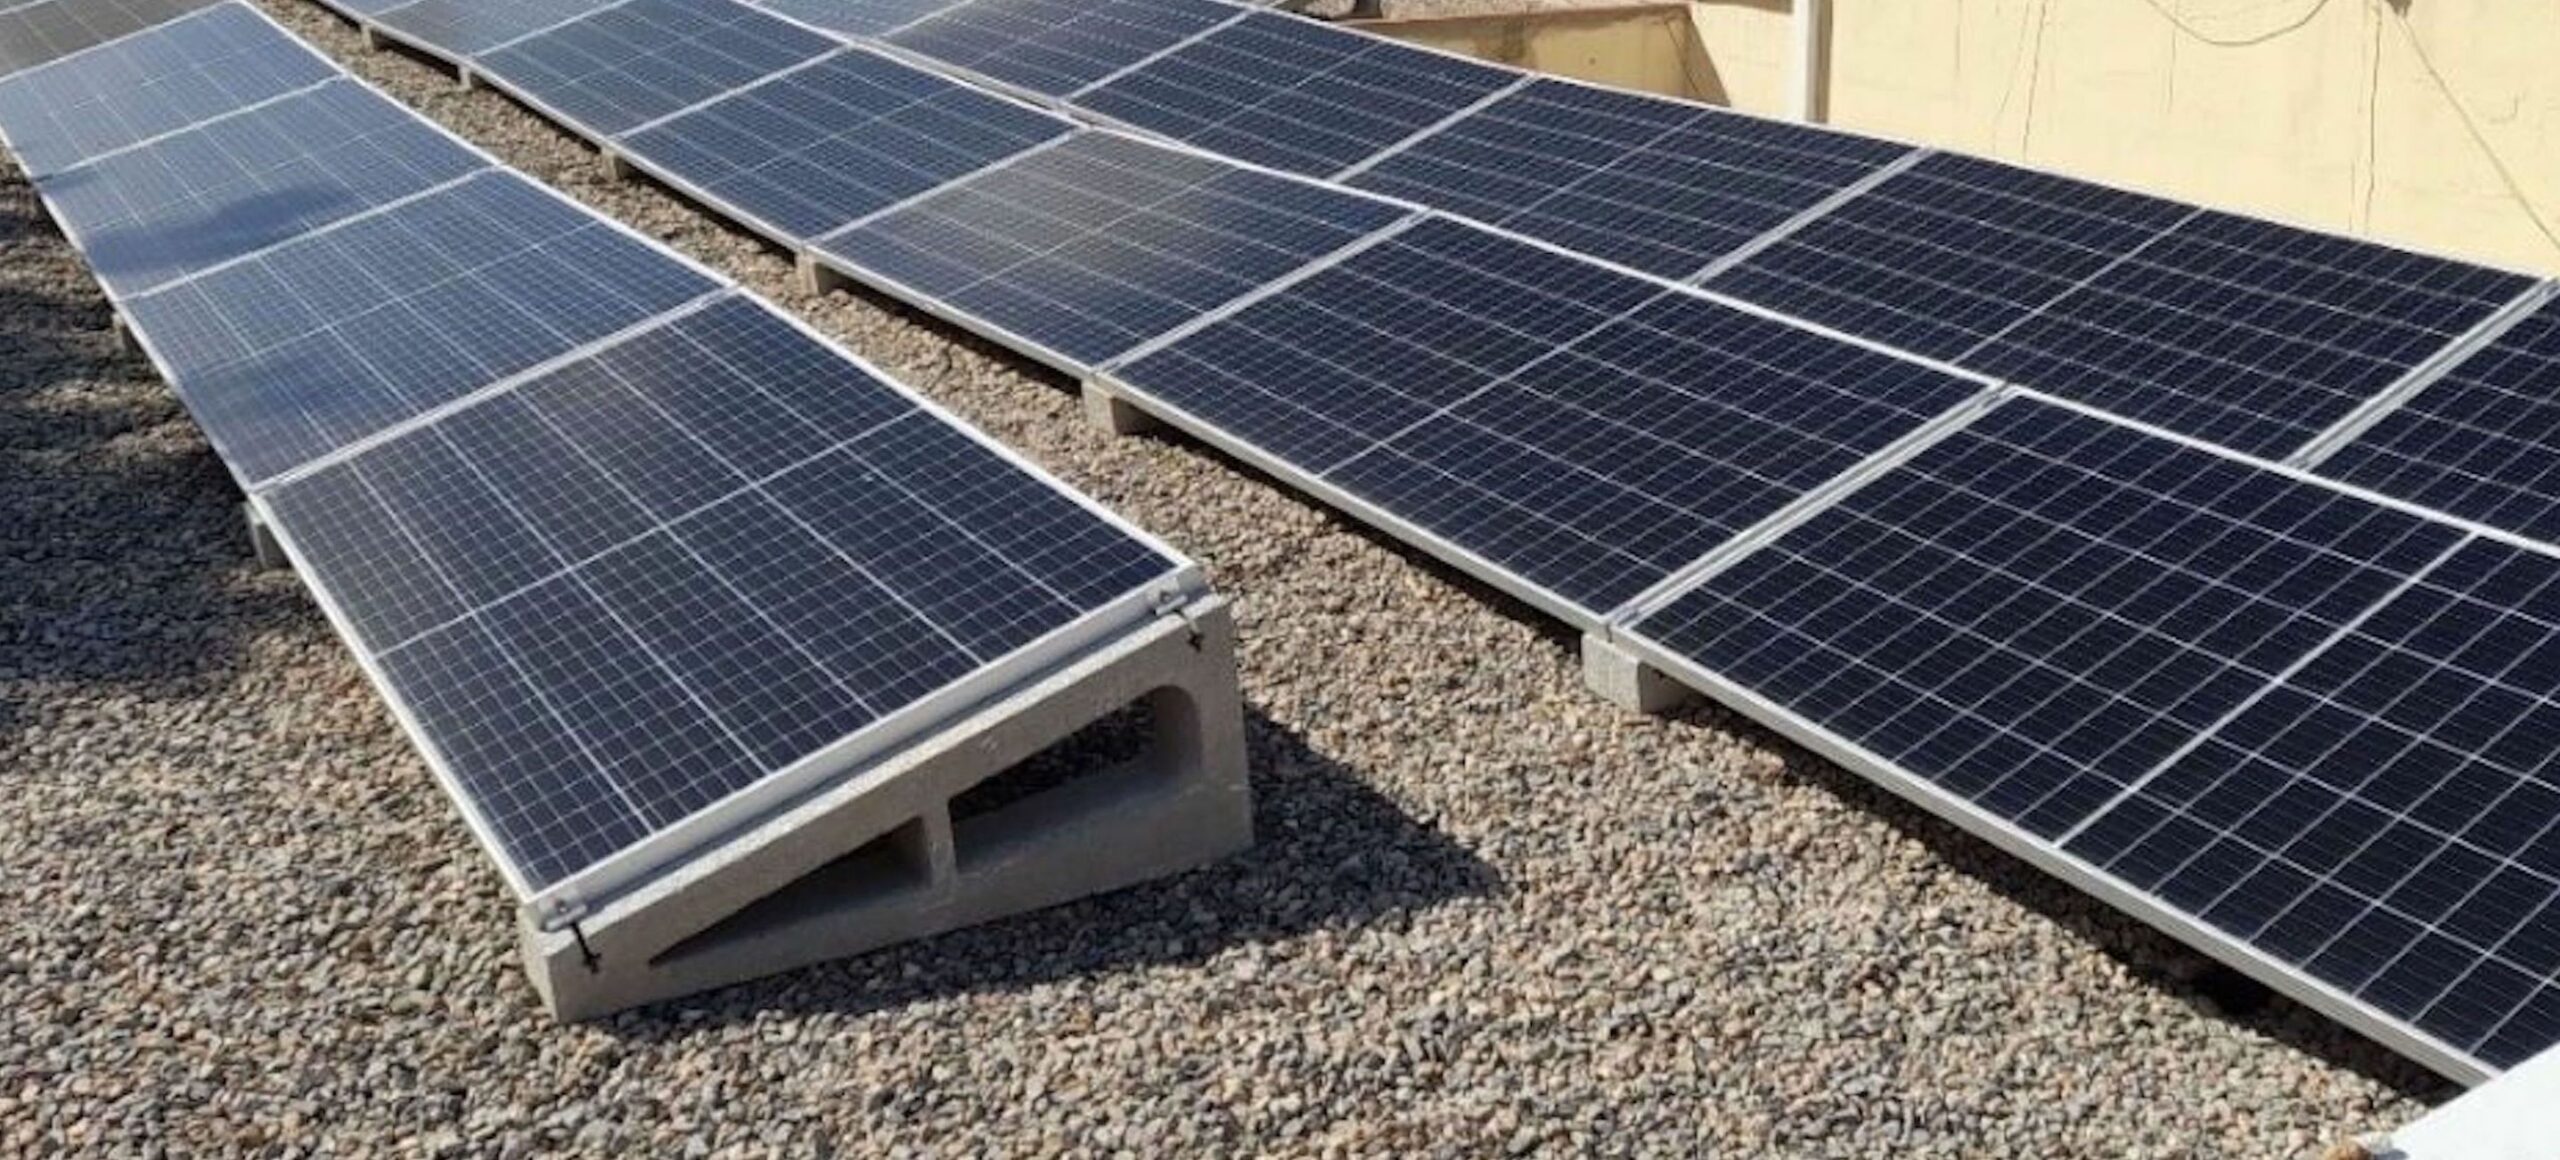 Valencia adjudica la instalación de 7.000 placas solares en las cubiertas de cinco cementerios municipales